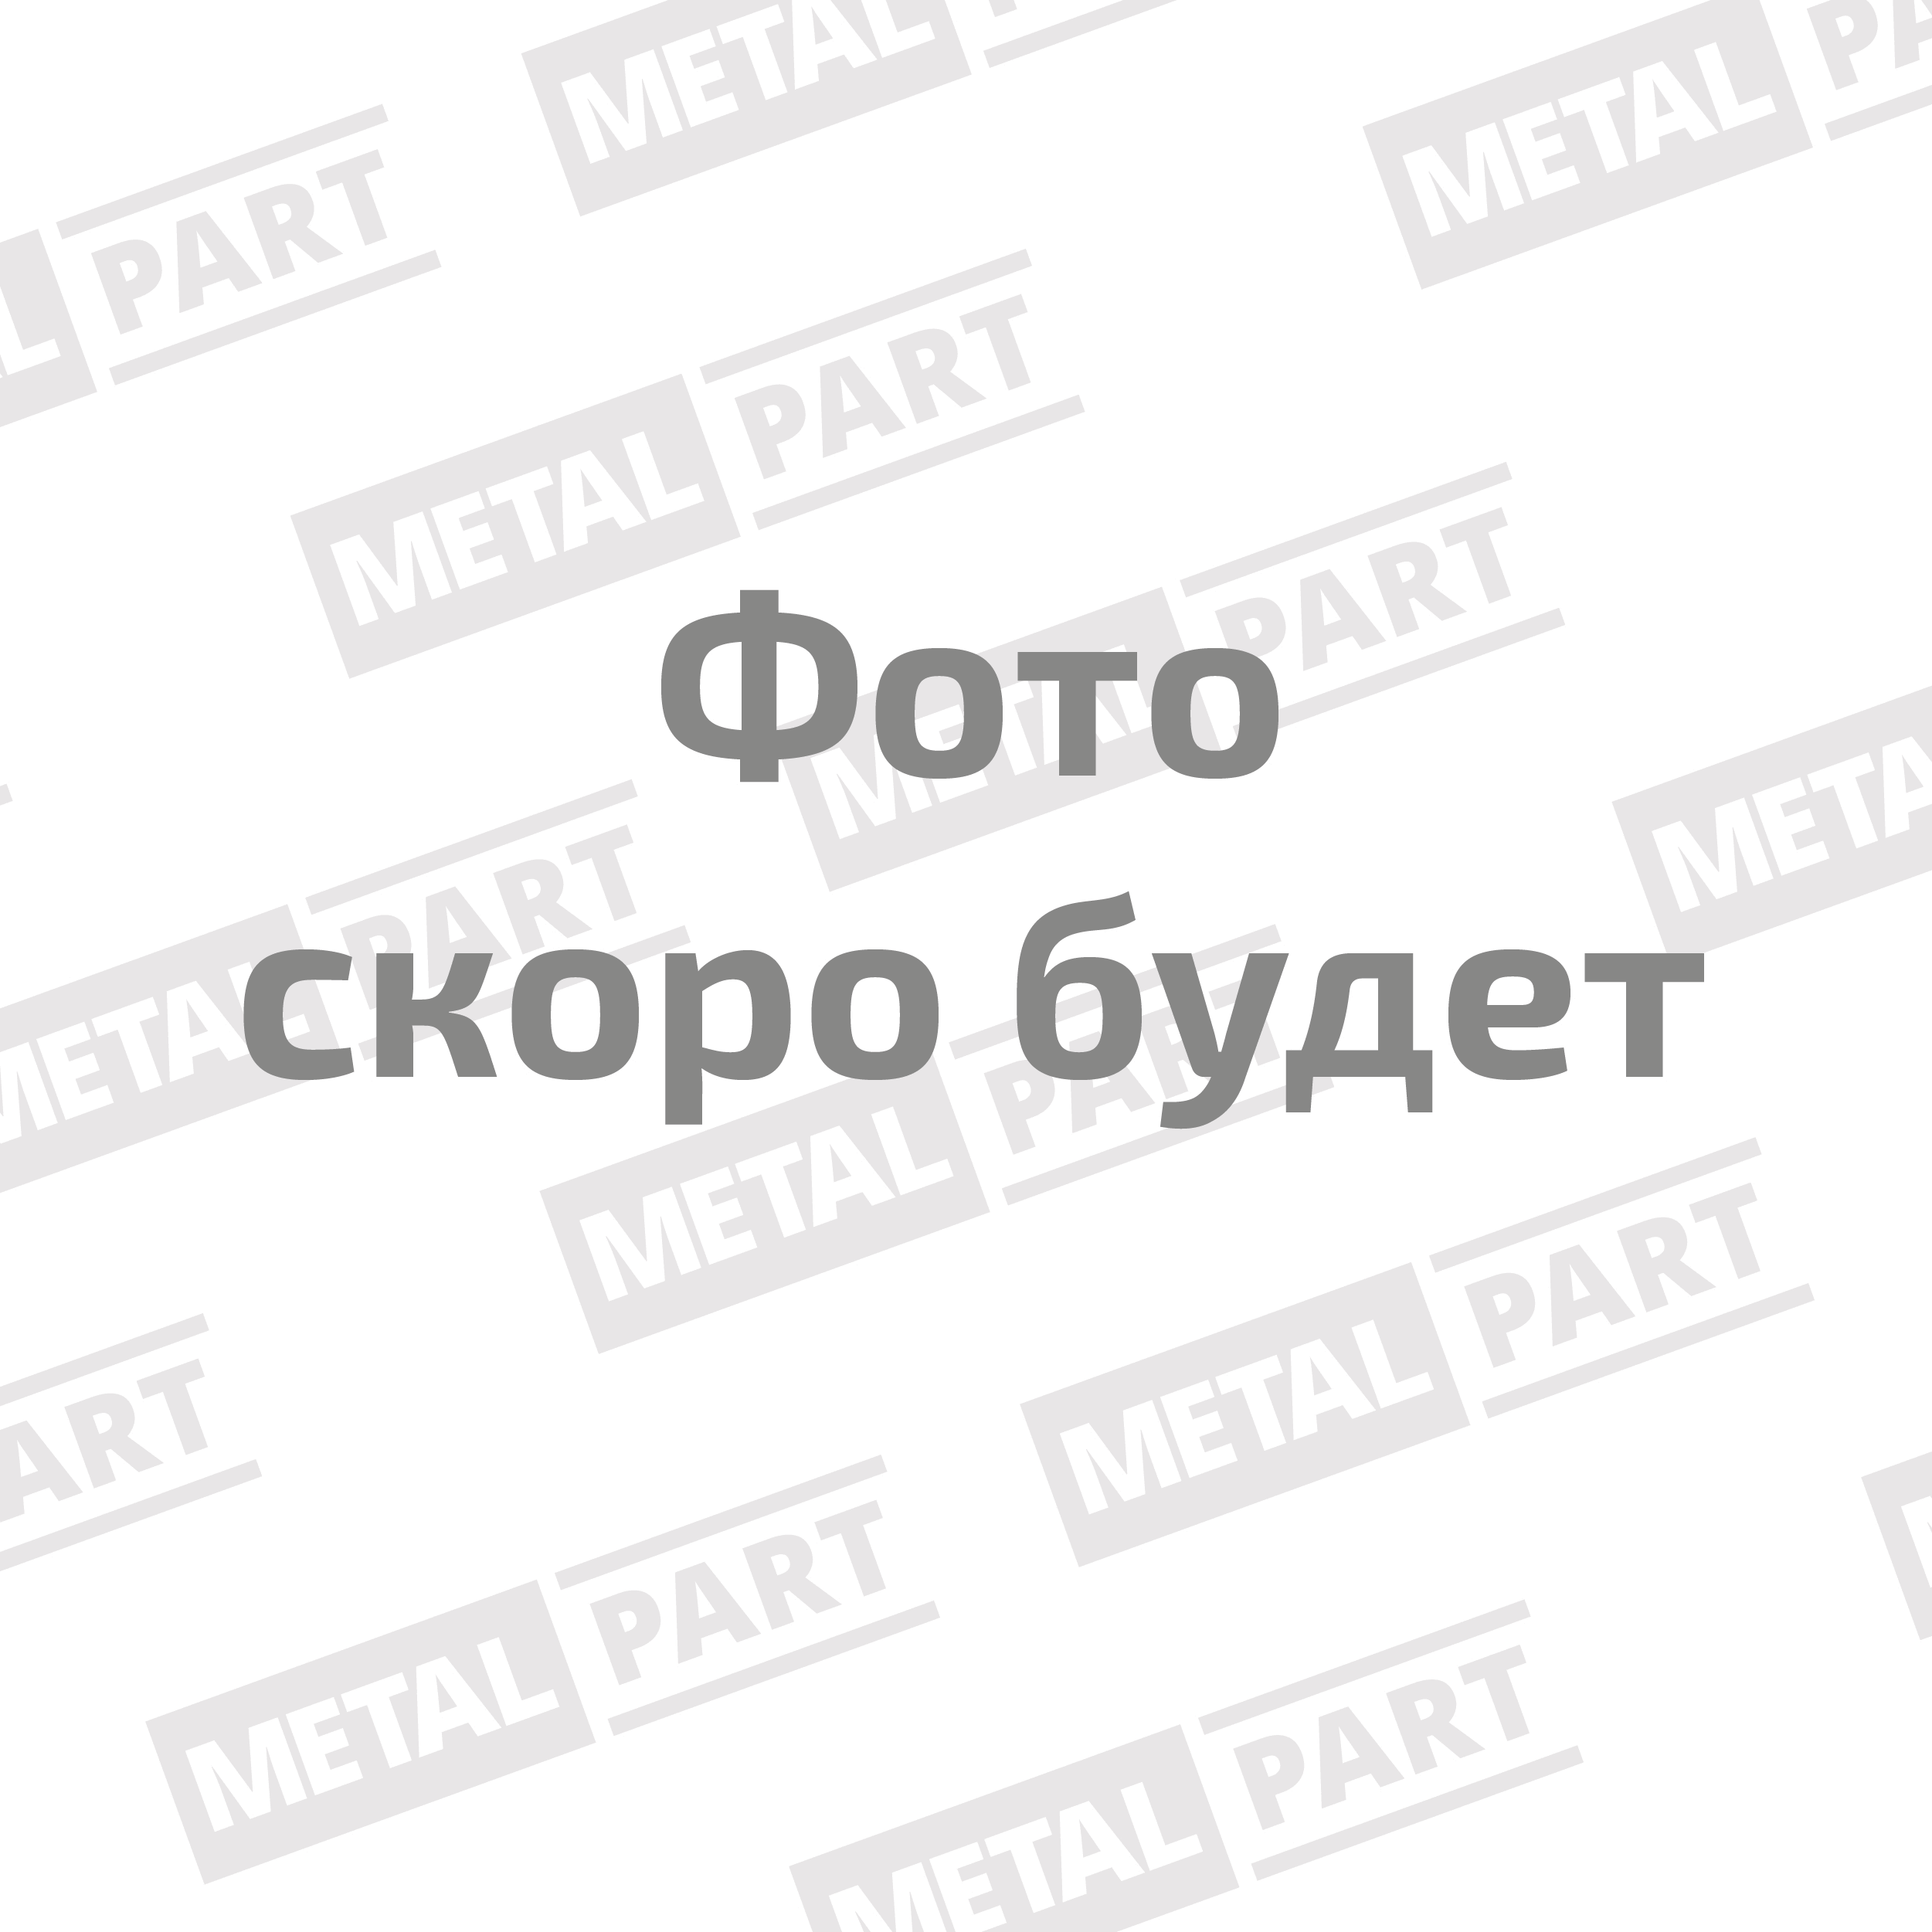 Датчик массового расхода воздуха MetalPart для автомобилей ООО "УАЗ" с двиг. ЗМЗ 409 Евро-3